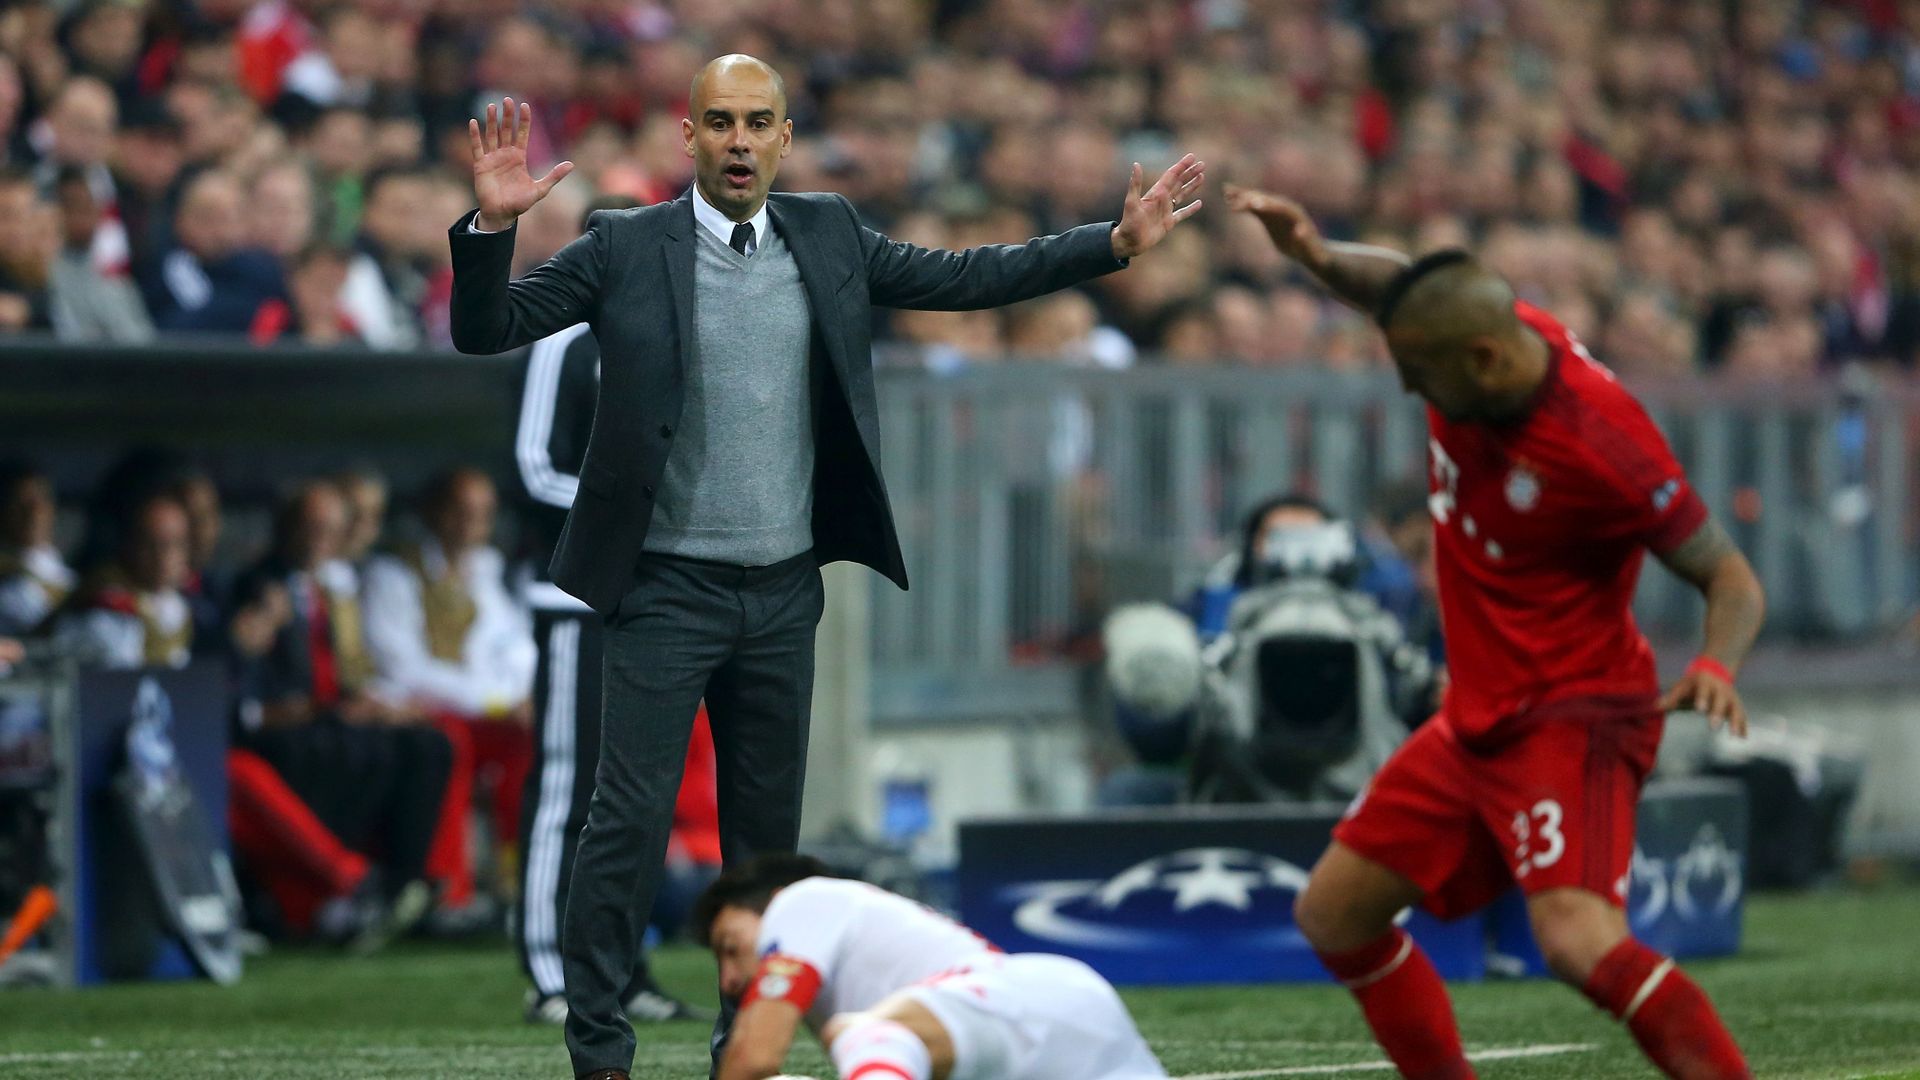 In 2013, Guardiola became the coach of Bayern Munich